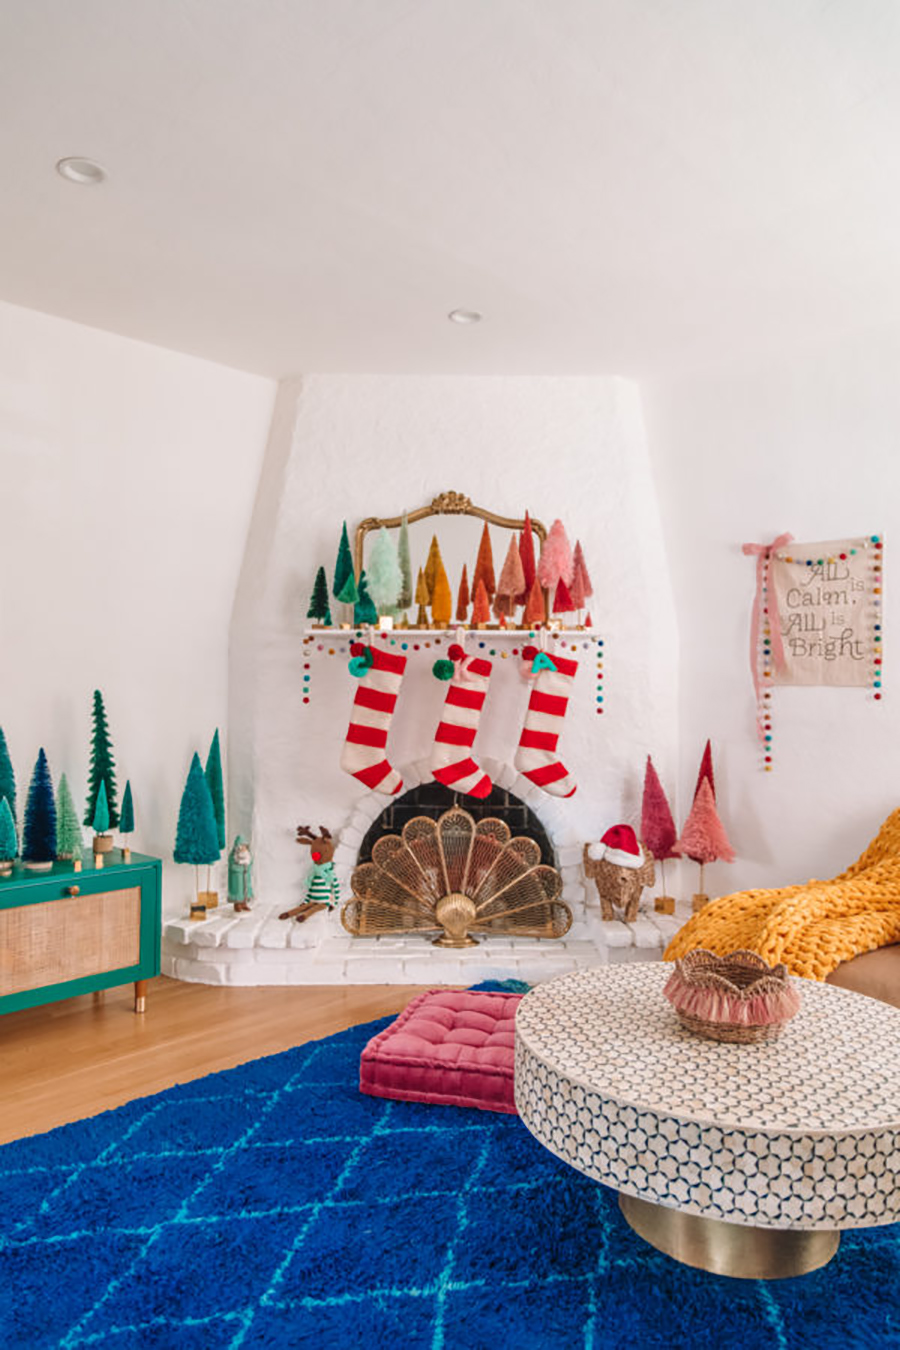 Escoge colores intensos para una decoración de Navidad vintage moderna.